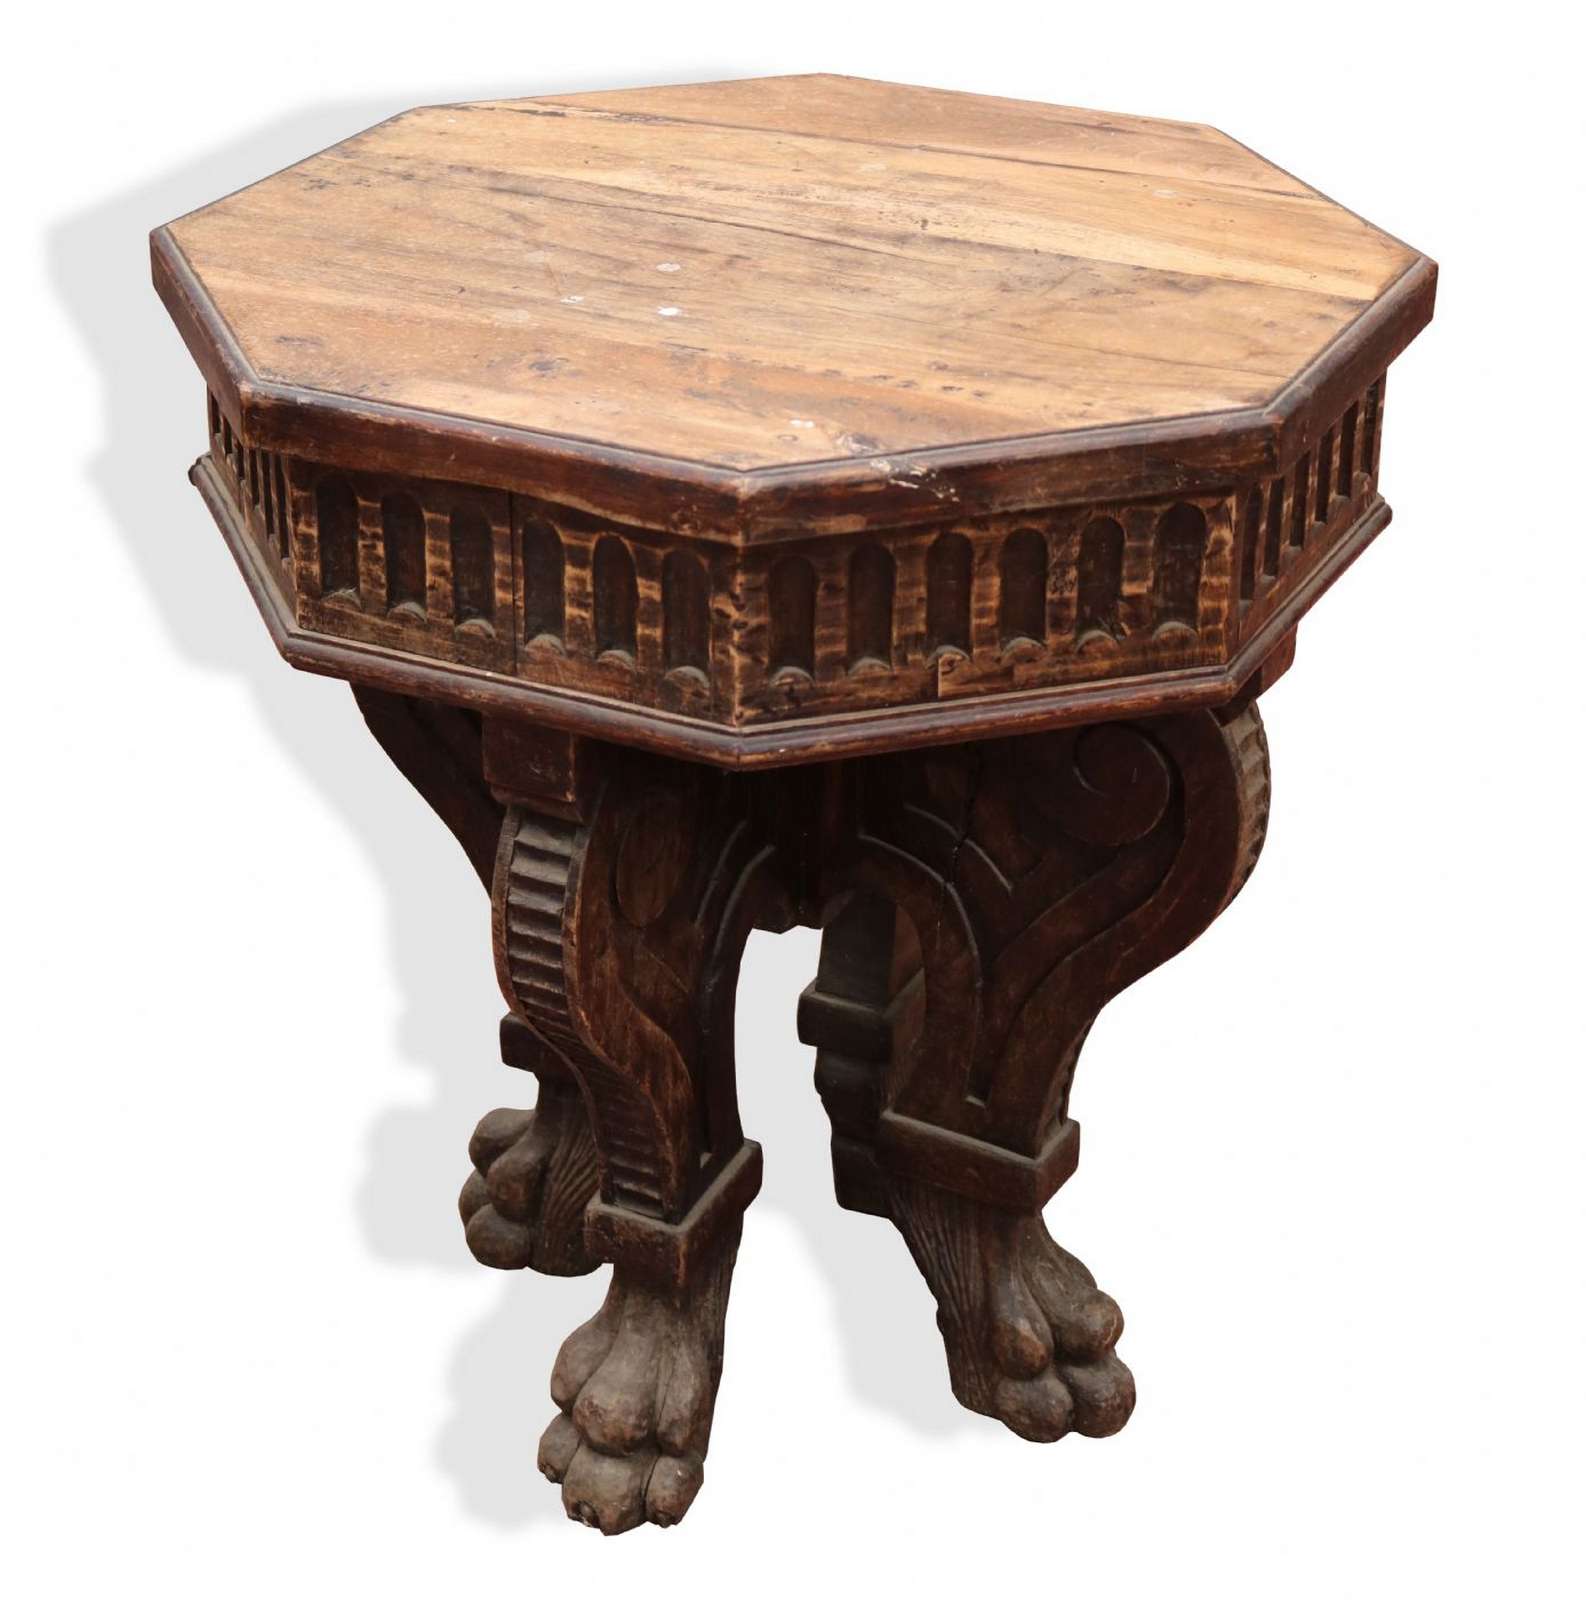 Tavolo in legno. - Tavoli in legno - Tavoli e complementi - Prodotti - Antichità Fiorillo